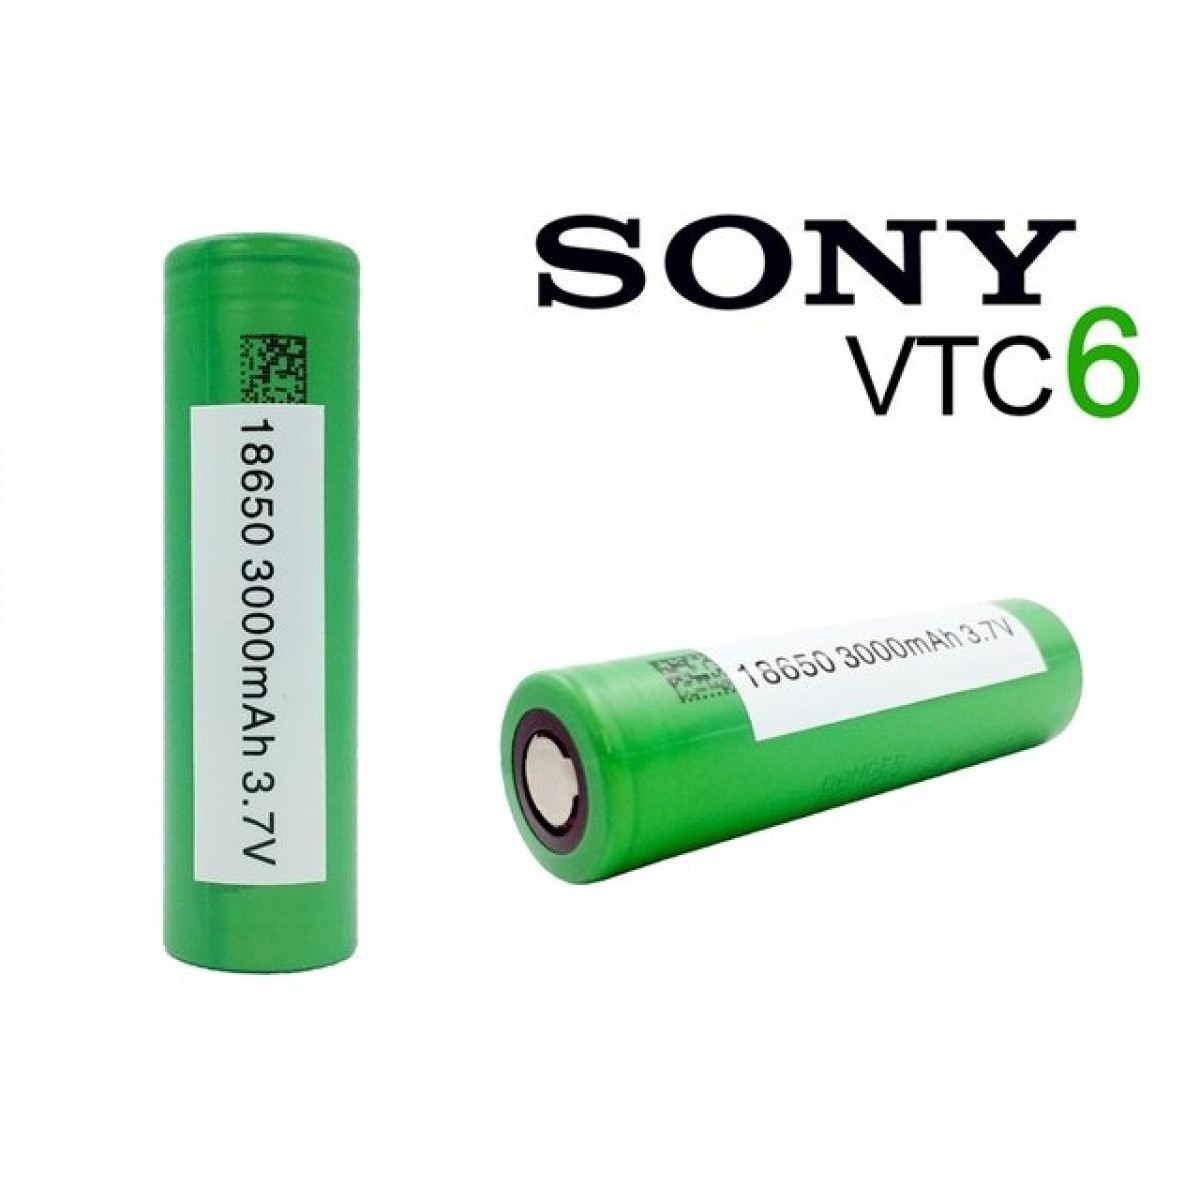 01 Bateria Sony - VTC6 - 18650 - outofstock -